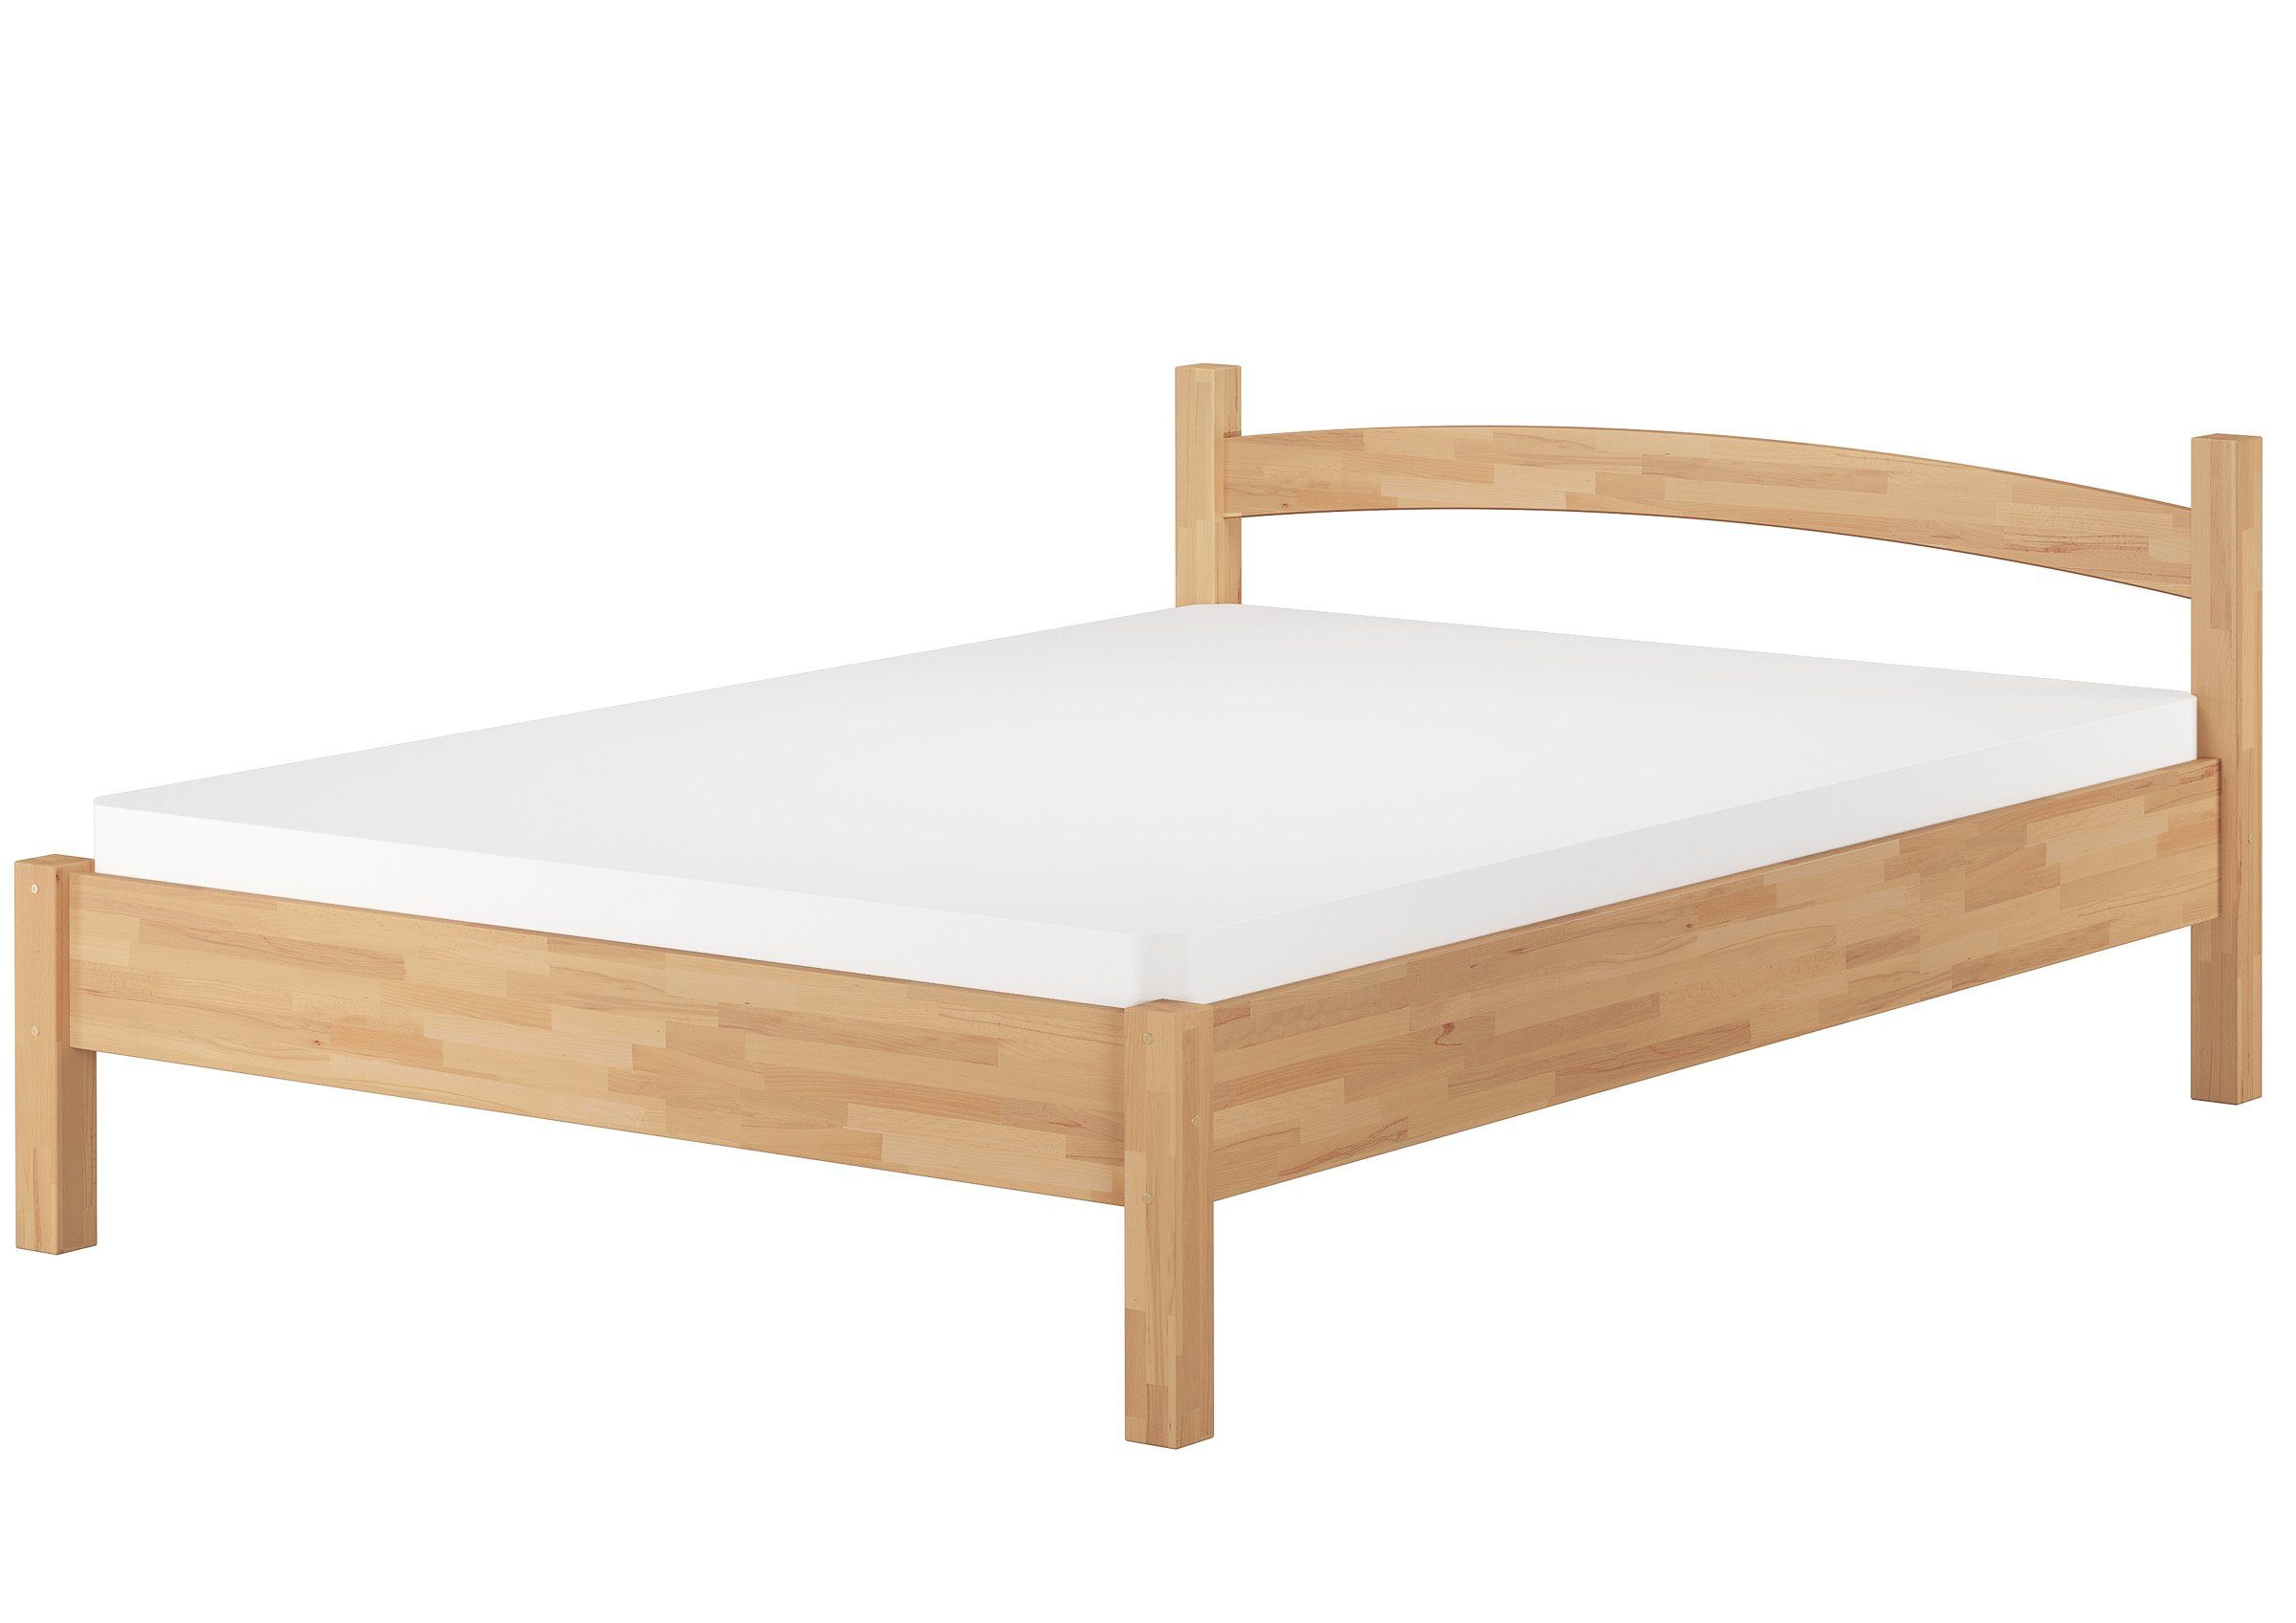 ERST-HOLZ Bett Extra breites Massivholzbett 120x200 mit Rost und Matratze, Buchefarblos lackiert